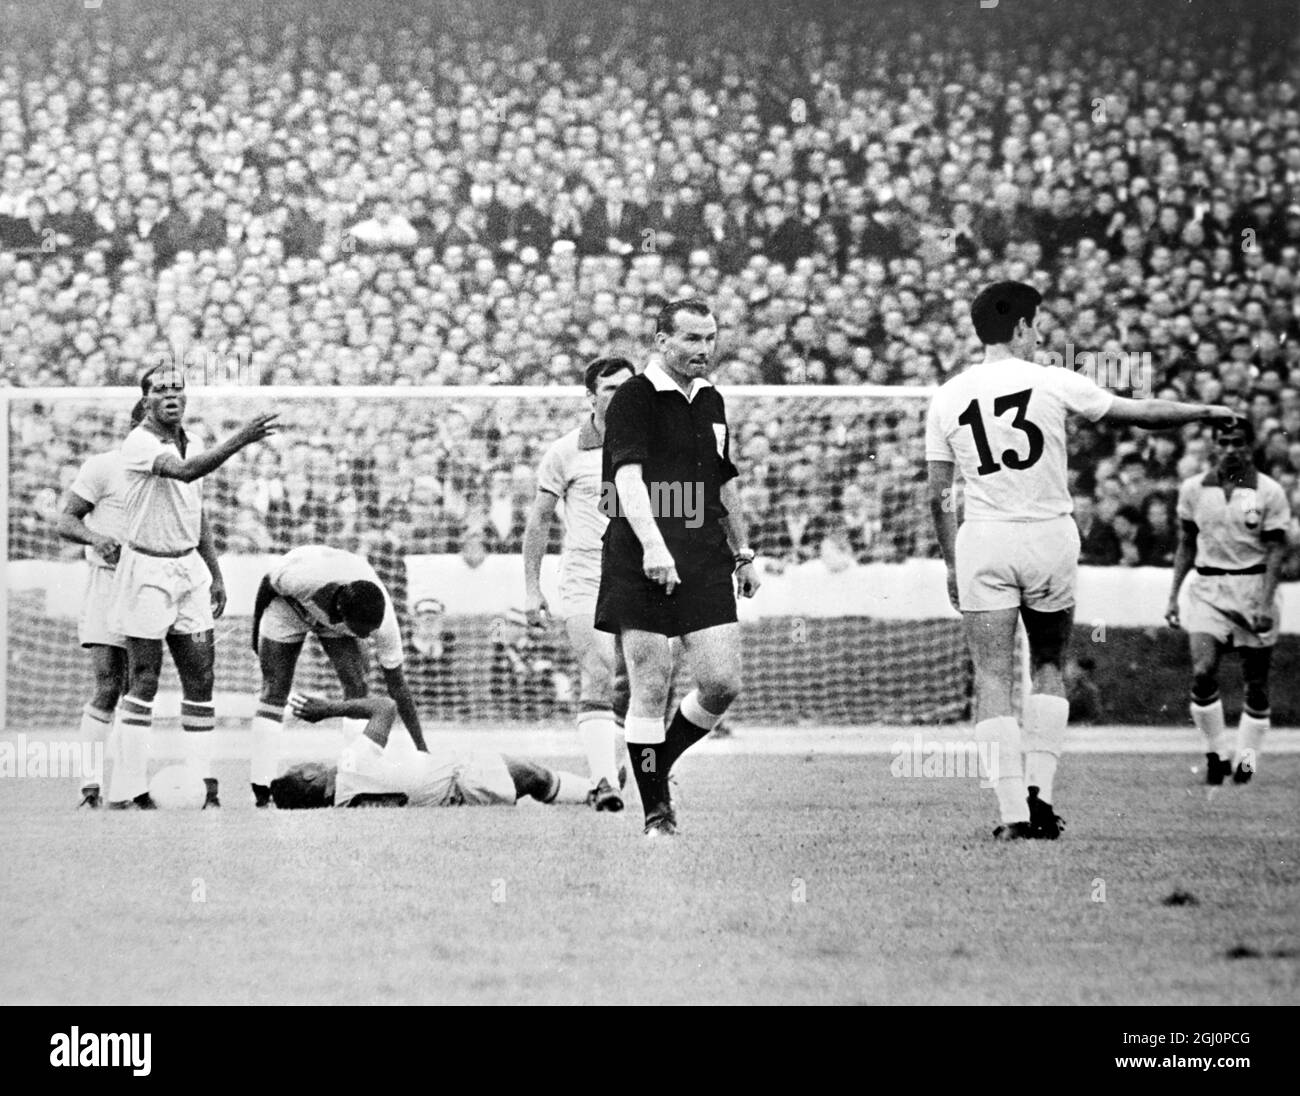 Pele blessé . Liverpool , Angleterre : le Pele du Brésil est photographié couché blessé alors que d'autres joueurs se crossent autour de leur match de la coupe du monde hier soir contre la Bulgarie . Identifié ici est le Dimiter bulgare Yakimov ( No 13 ) . Le résultat du match était 2 - 0 pour le Brésil . 13 juillet 1966 Banque D'Images